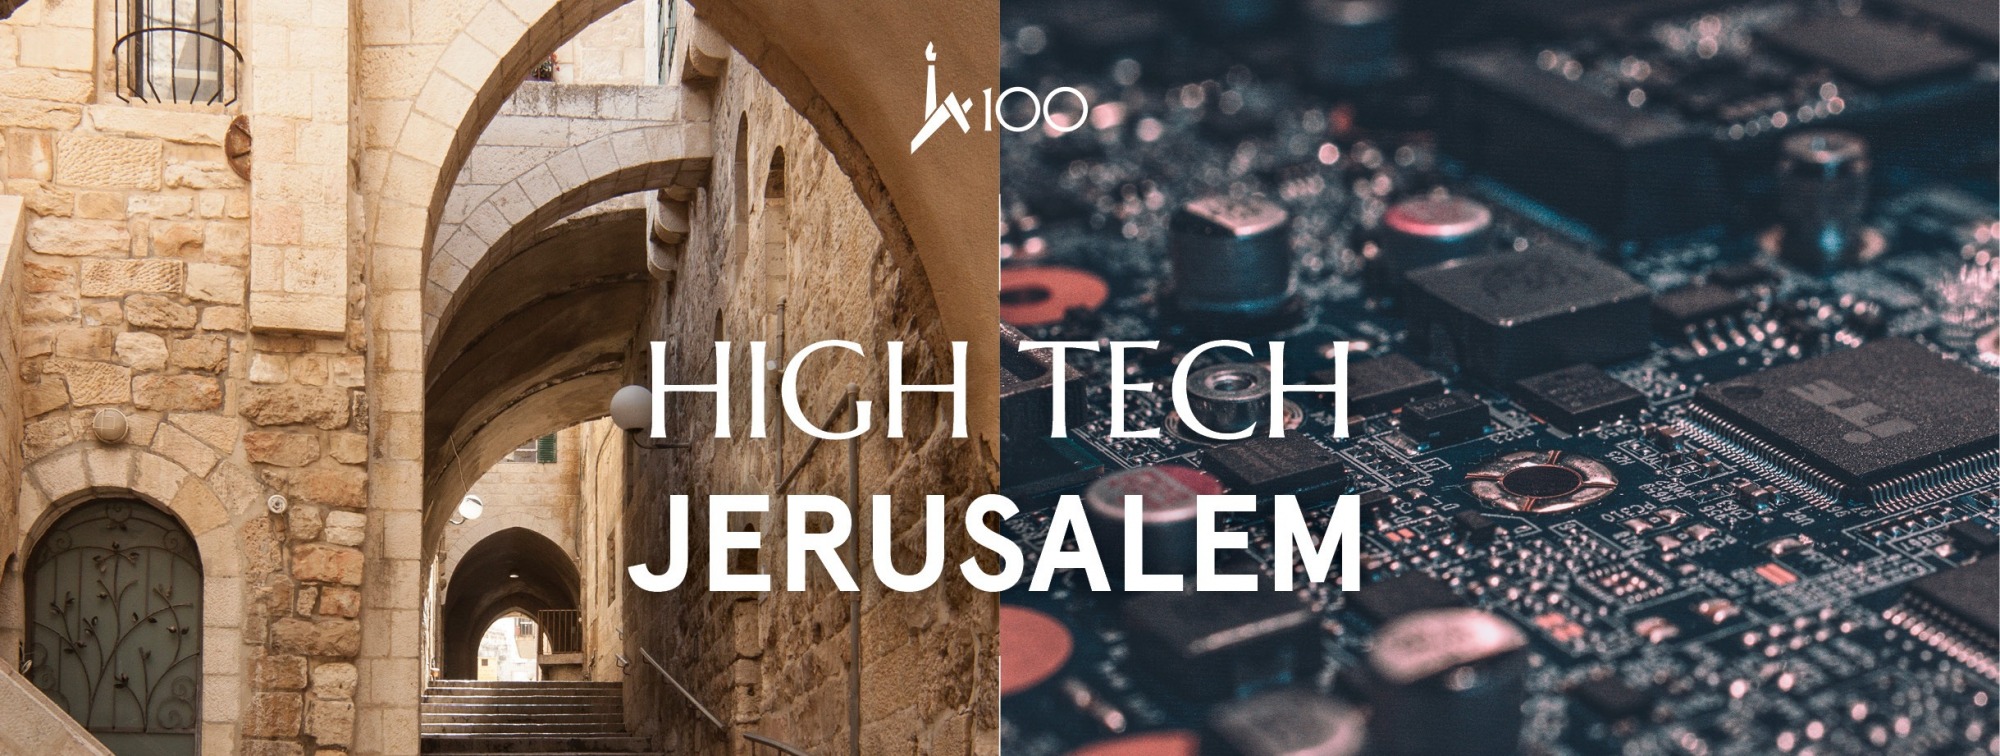 High-Tech Jerusalem